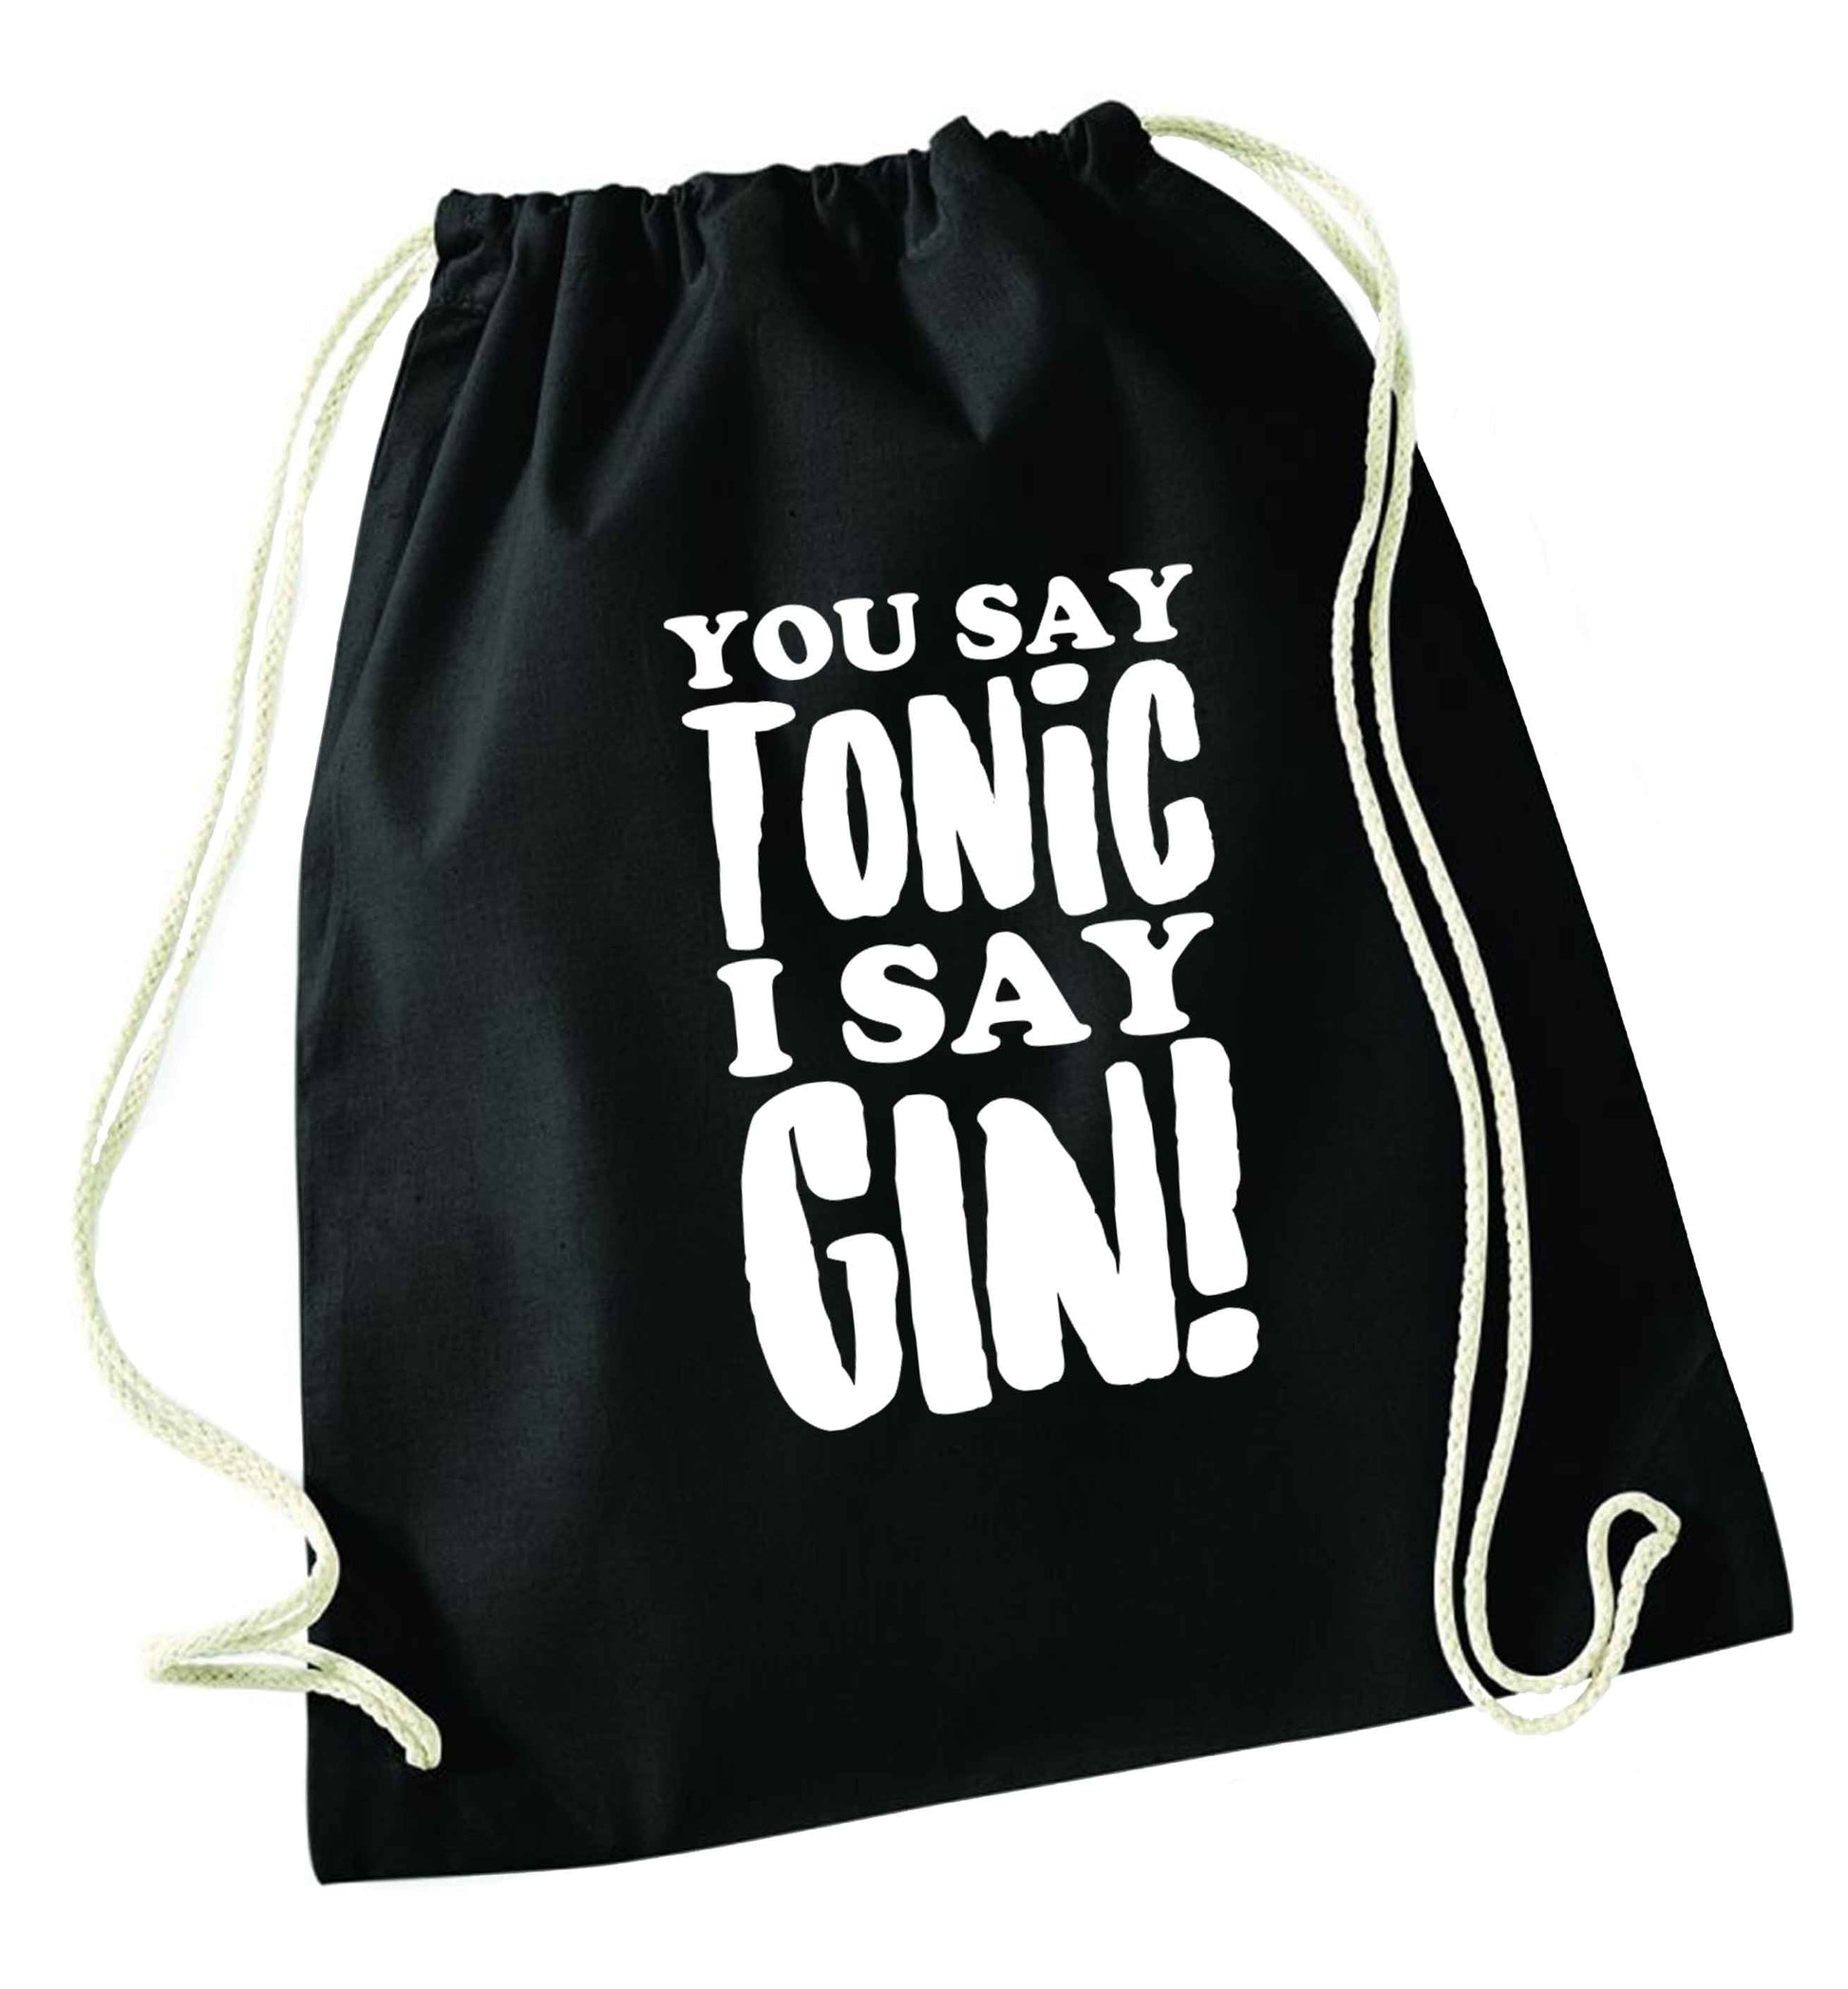 You say tonic I say gin black drawstring bag